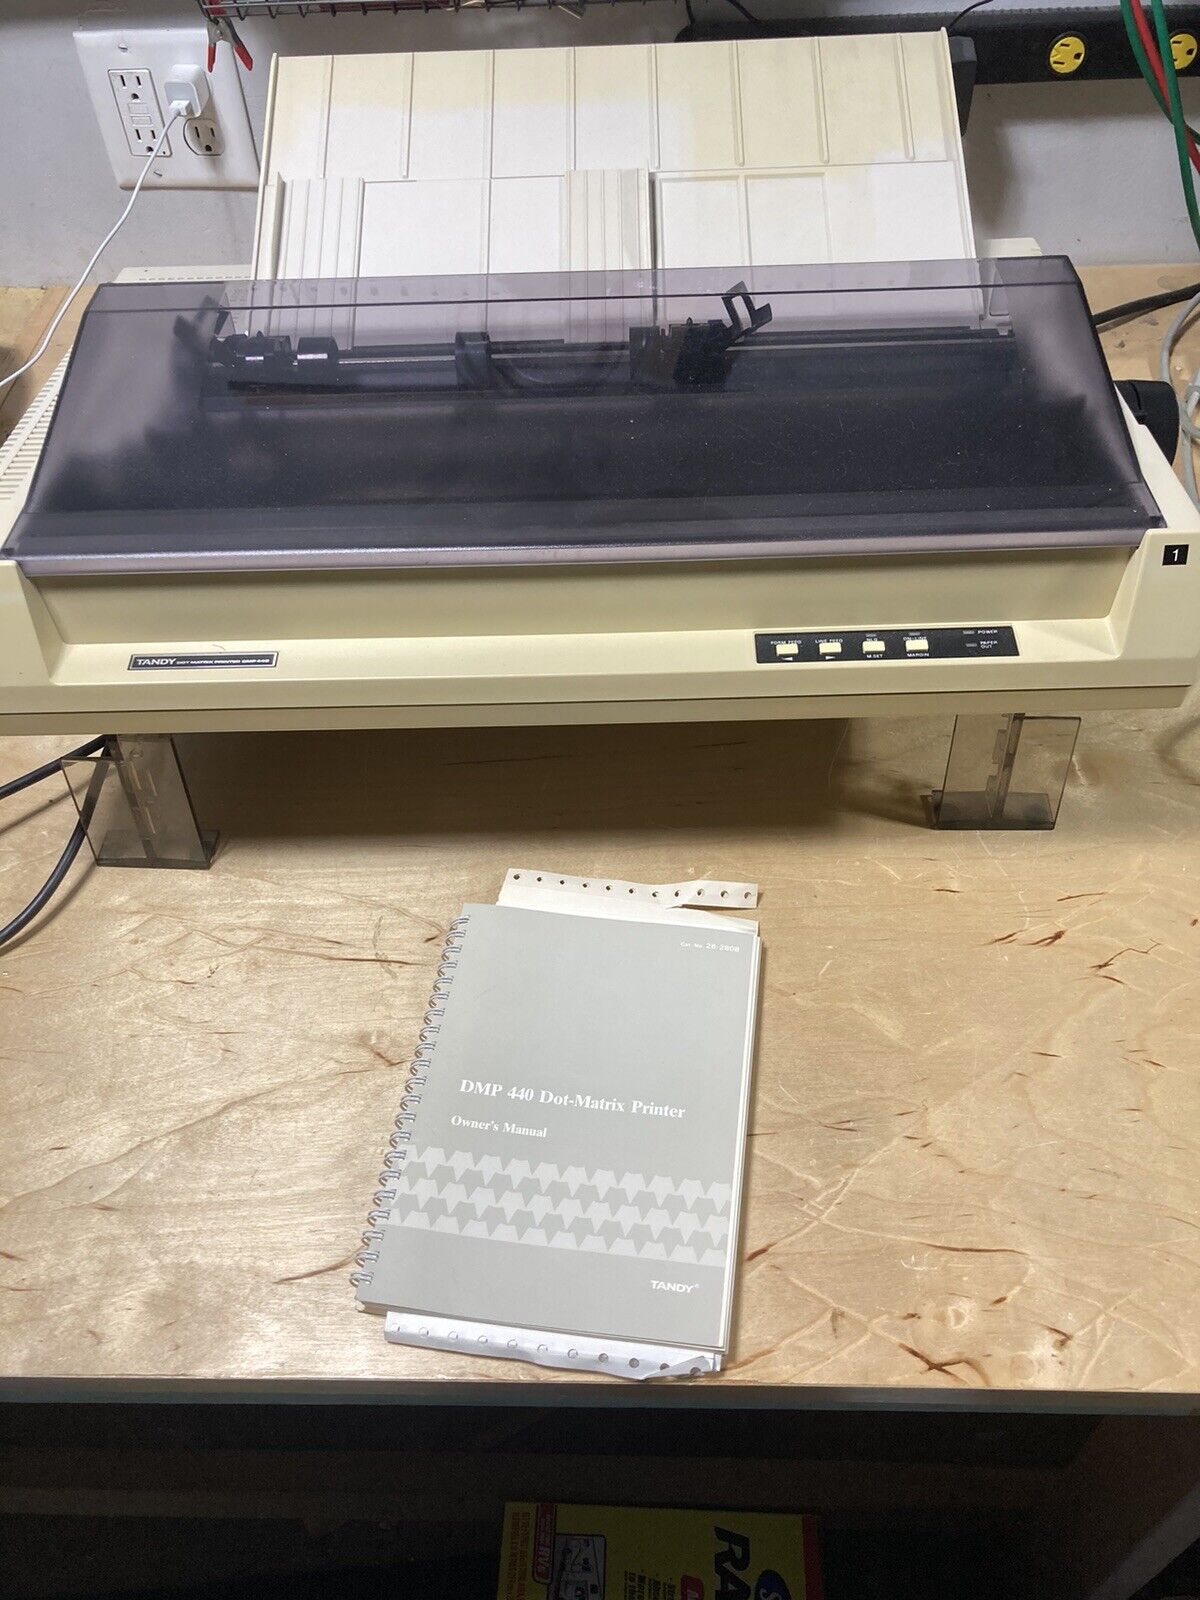 Tandy DMP-440 Dot Matrix Printer